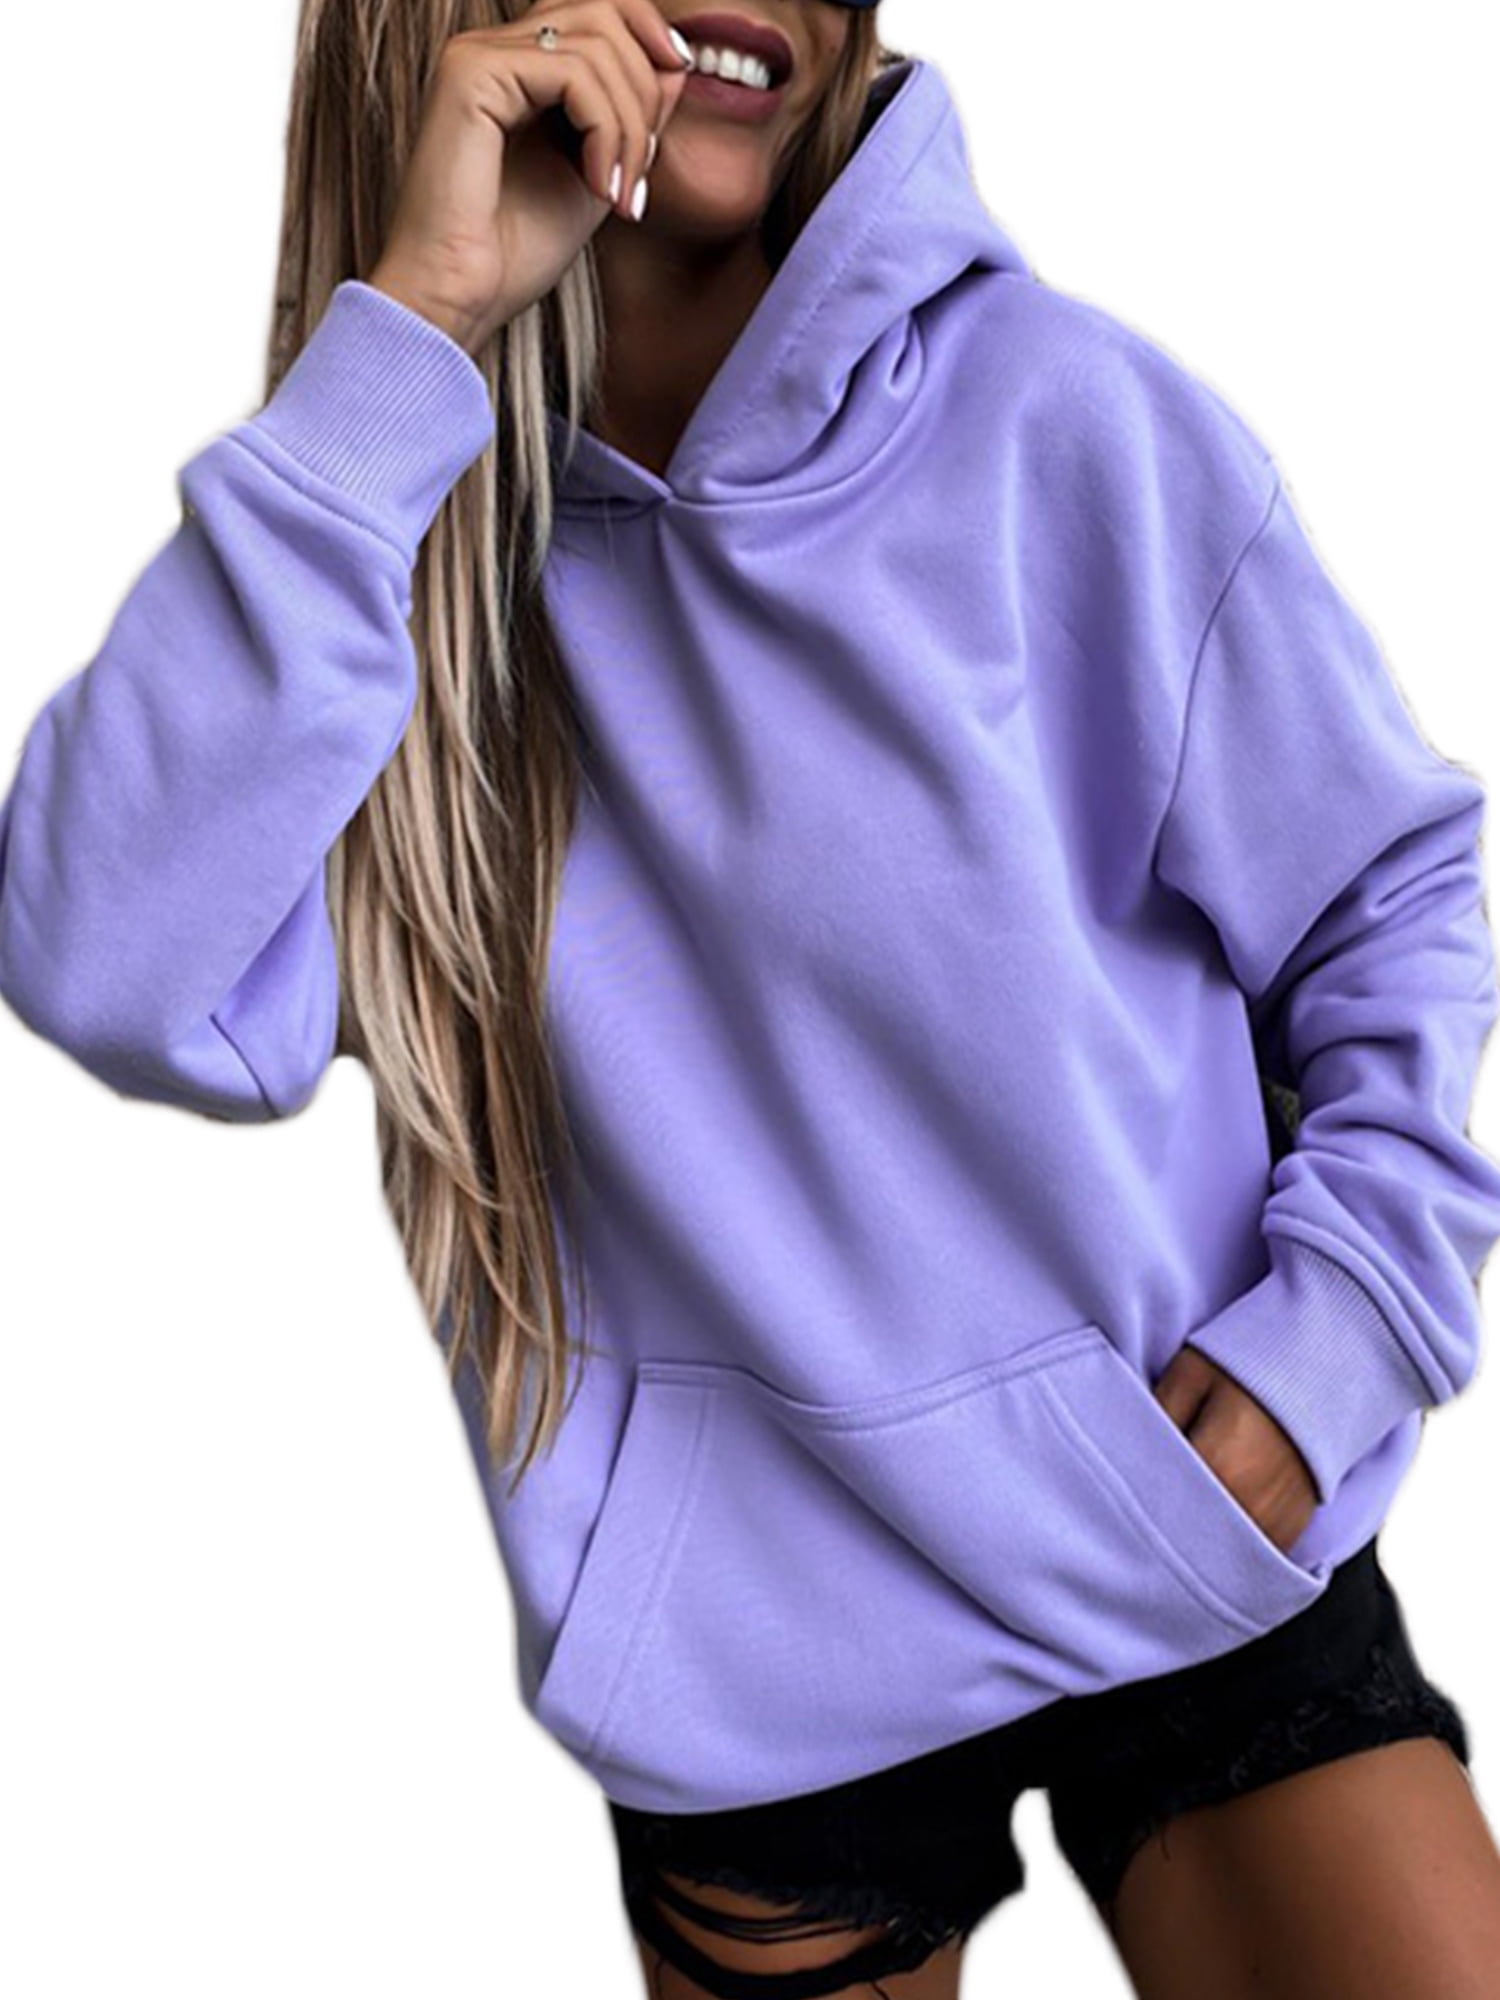 Grianlook Ladies Pullover Drawstring Hoodies Long Sleeve Sweatshirt Women  Loose Fit Hooded Tops Casual Solid Color Purple XXL